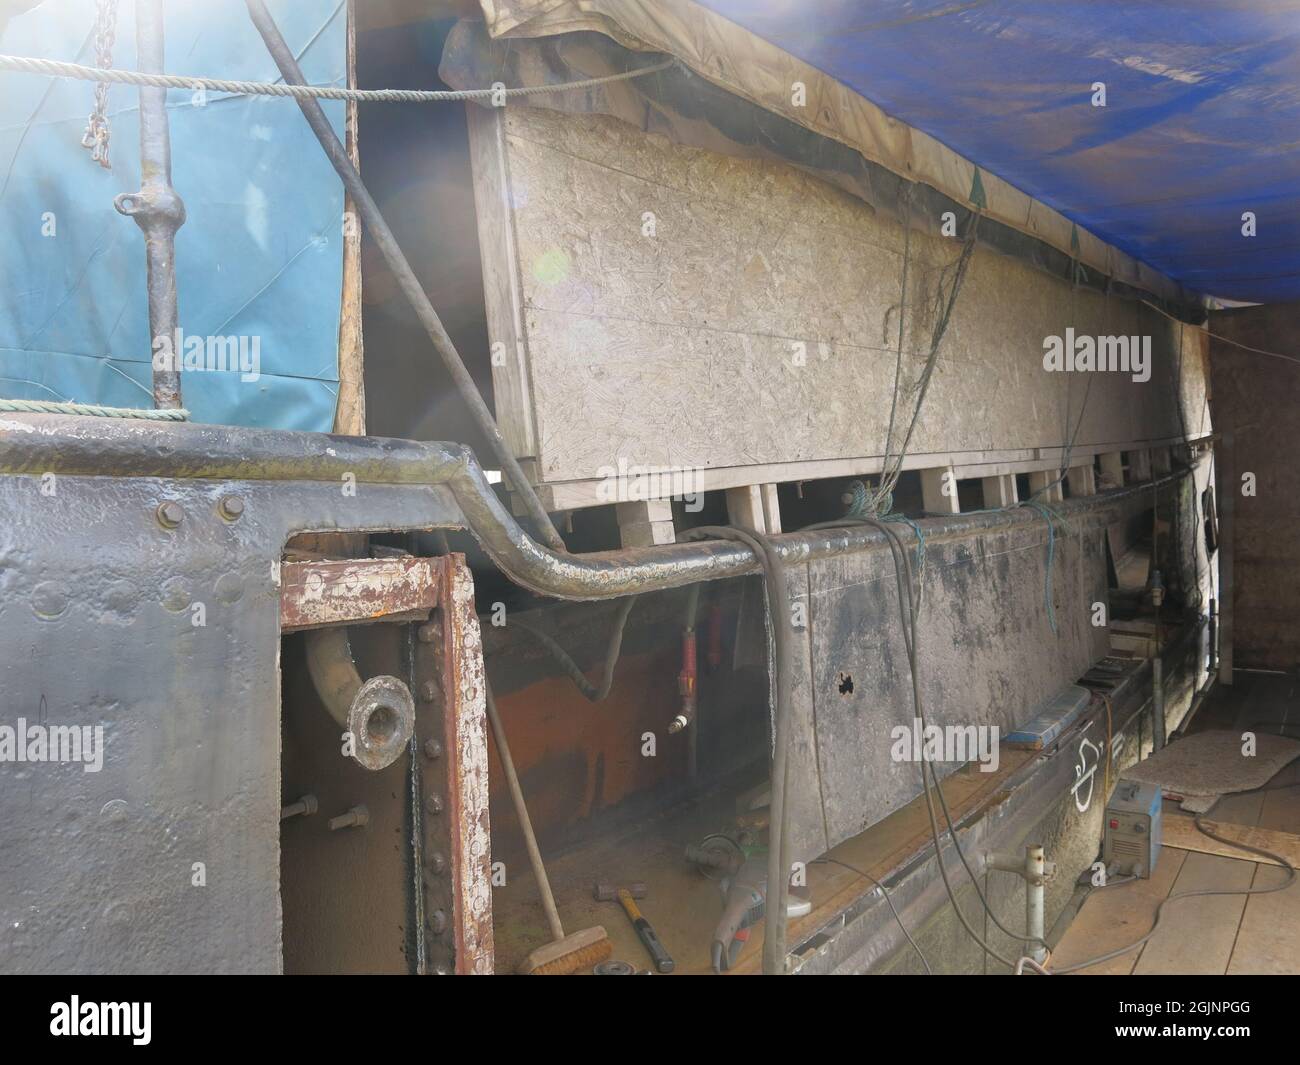 Gli appassionati di barche storiche possono vedere i progressi sul restauro dello scafo di Auld Reekie a Crinan Boatyard; l'installazione di una nuova lamiera d'acciaio. Foto Stock